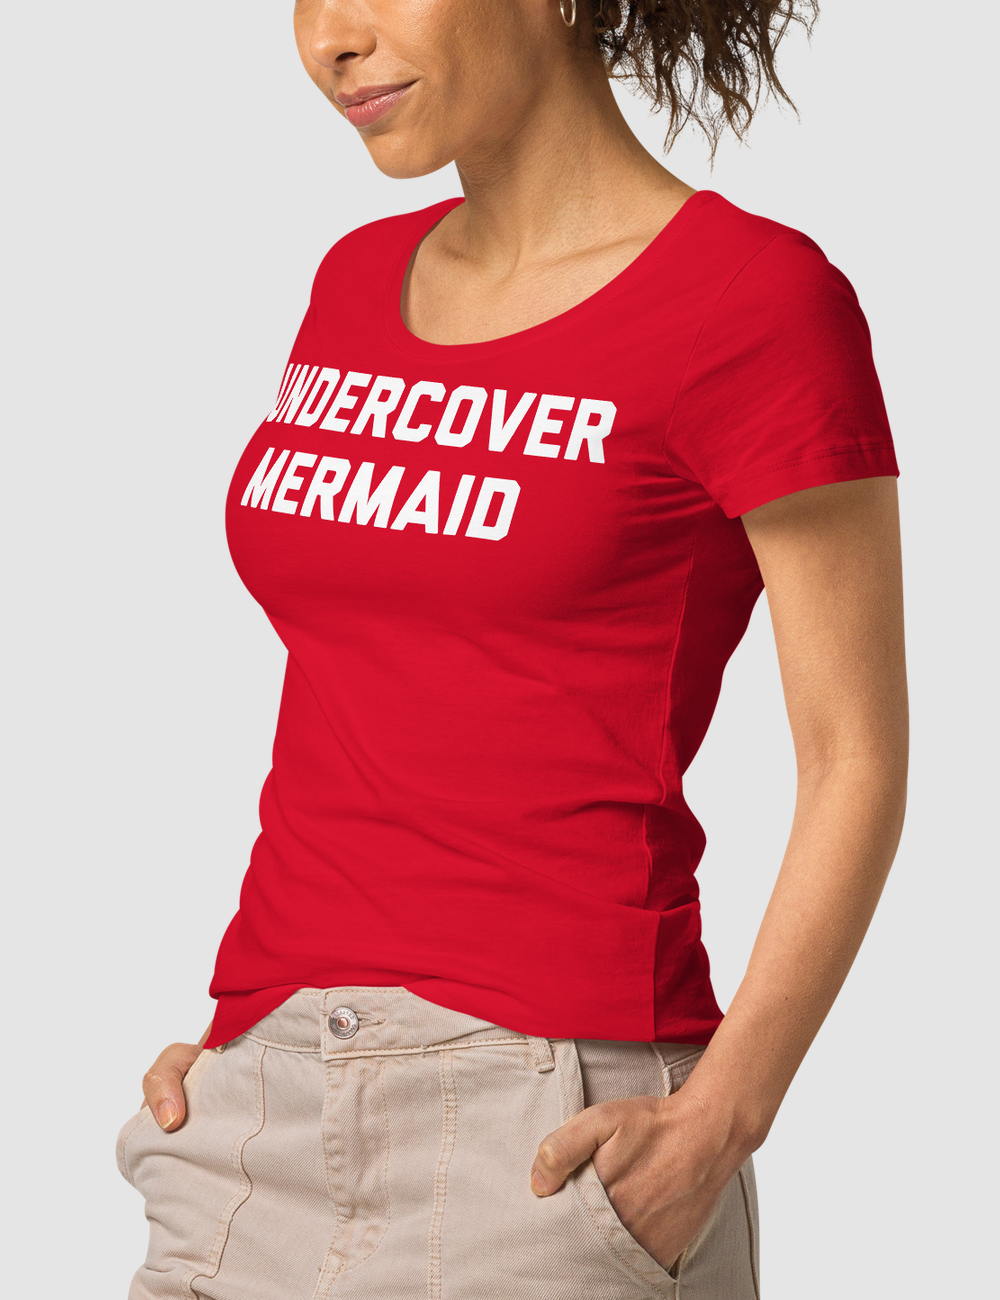 Undercover Mermaid Women's Organic Round Neck T-Shirt OniTakai